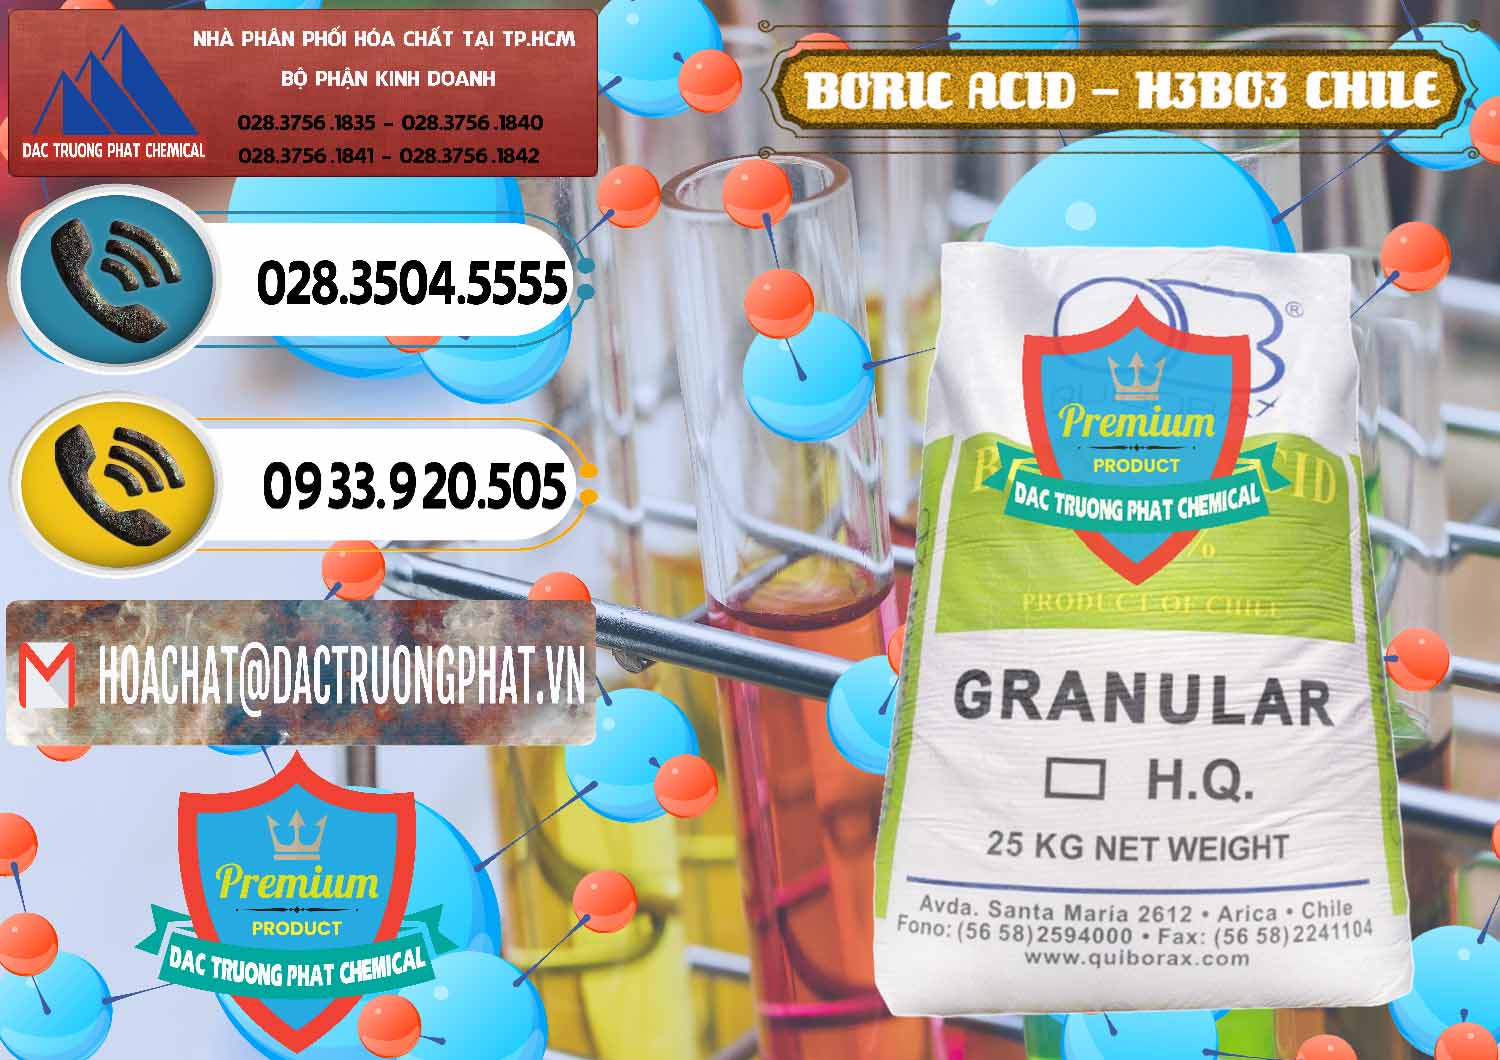 Chuyên cung cấp và bán Acid Boric – Axit Boric H3BO3 99% Quiborax Chile - 0281 - Đơn vị chuyên cung cấp và nhập khẩu hóa chất tại TP.HCM - hoachatdetnhuom.vn